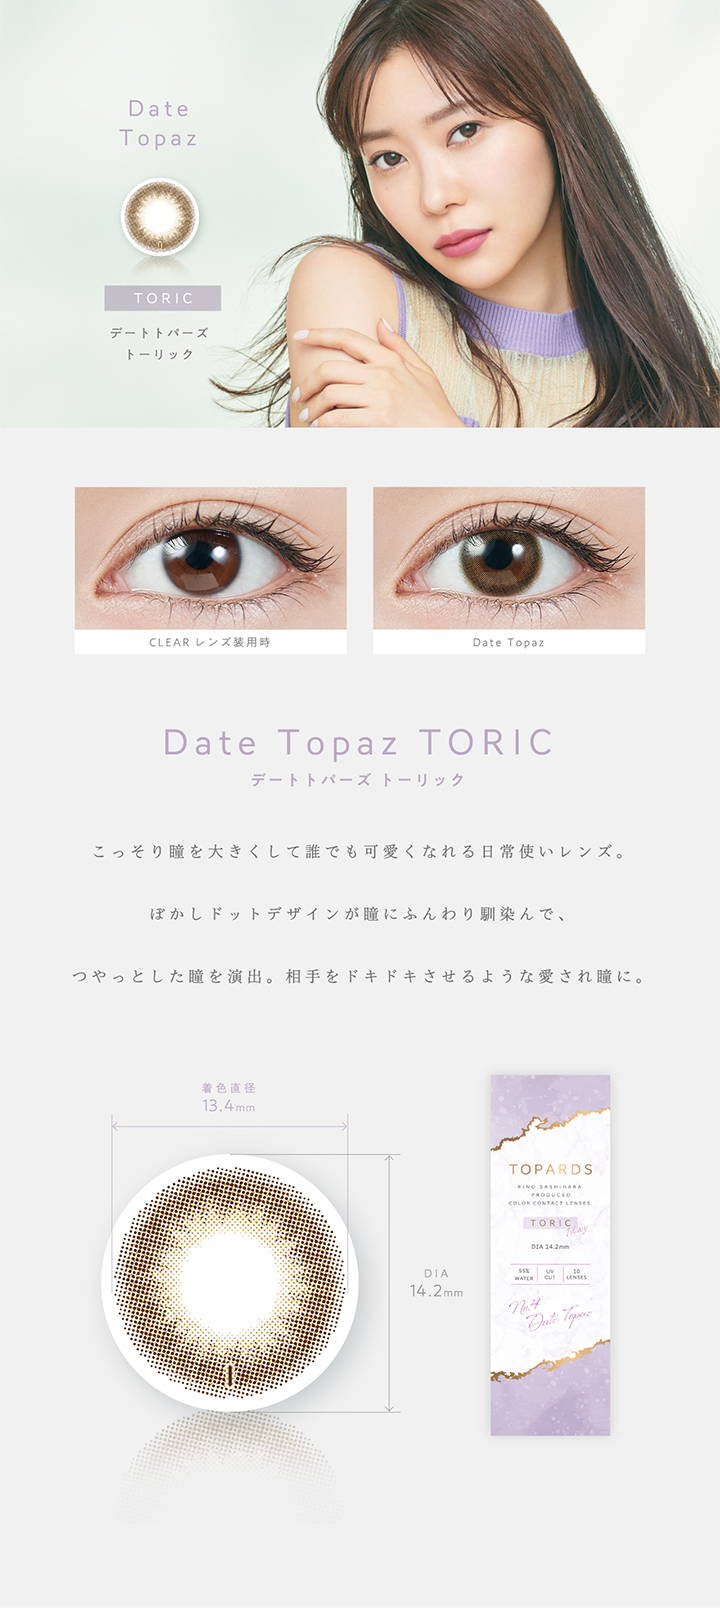 Date Topaz TORIC(デートトパーズトーリック),トーリック,こっそり瞳を大きくして誰でも可愛くなれる日常使いレンズ。ぼかしドットデザインが瞳にふんわり馴染んで、つやっとした瞳を演出。相手をドキドキさせるような愛され瞳に。,着色直径13.4mm,DIA14.2mm|TOPARDS TORIC(トパーズトーリック)コンタクトレンズ